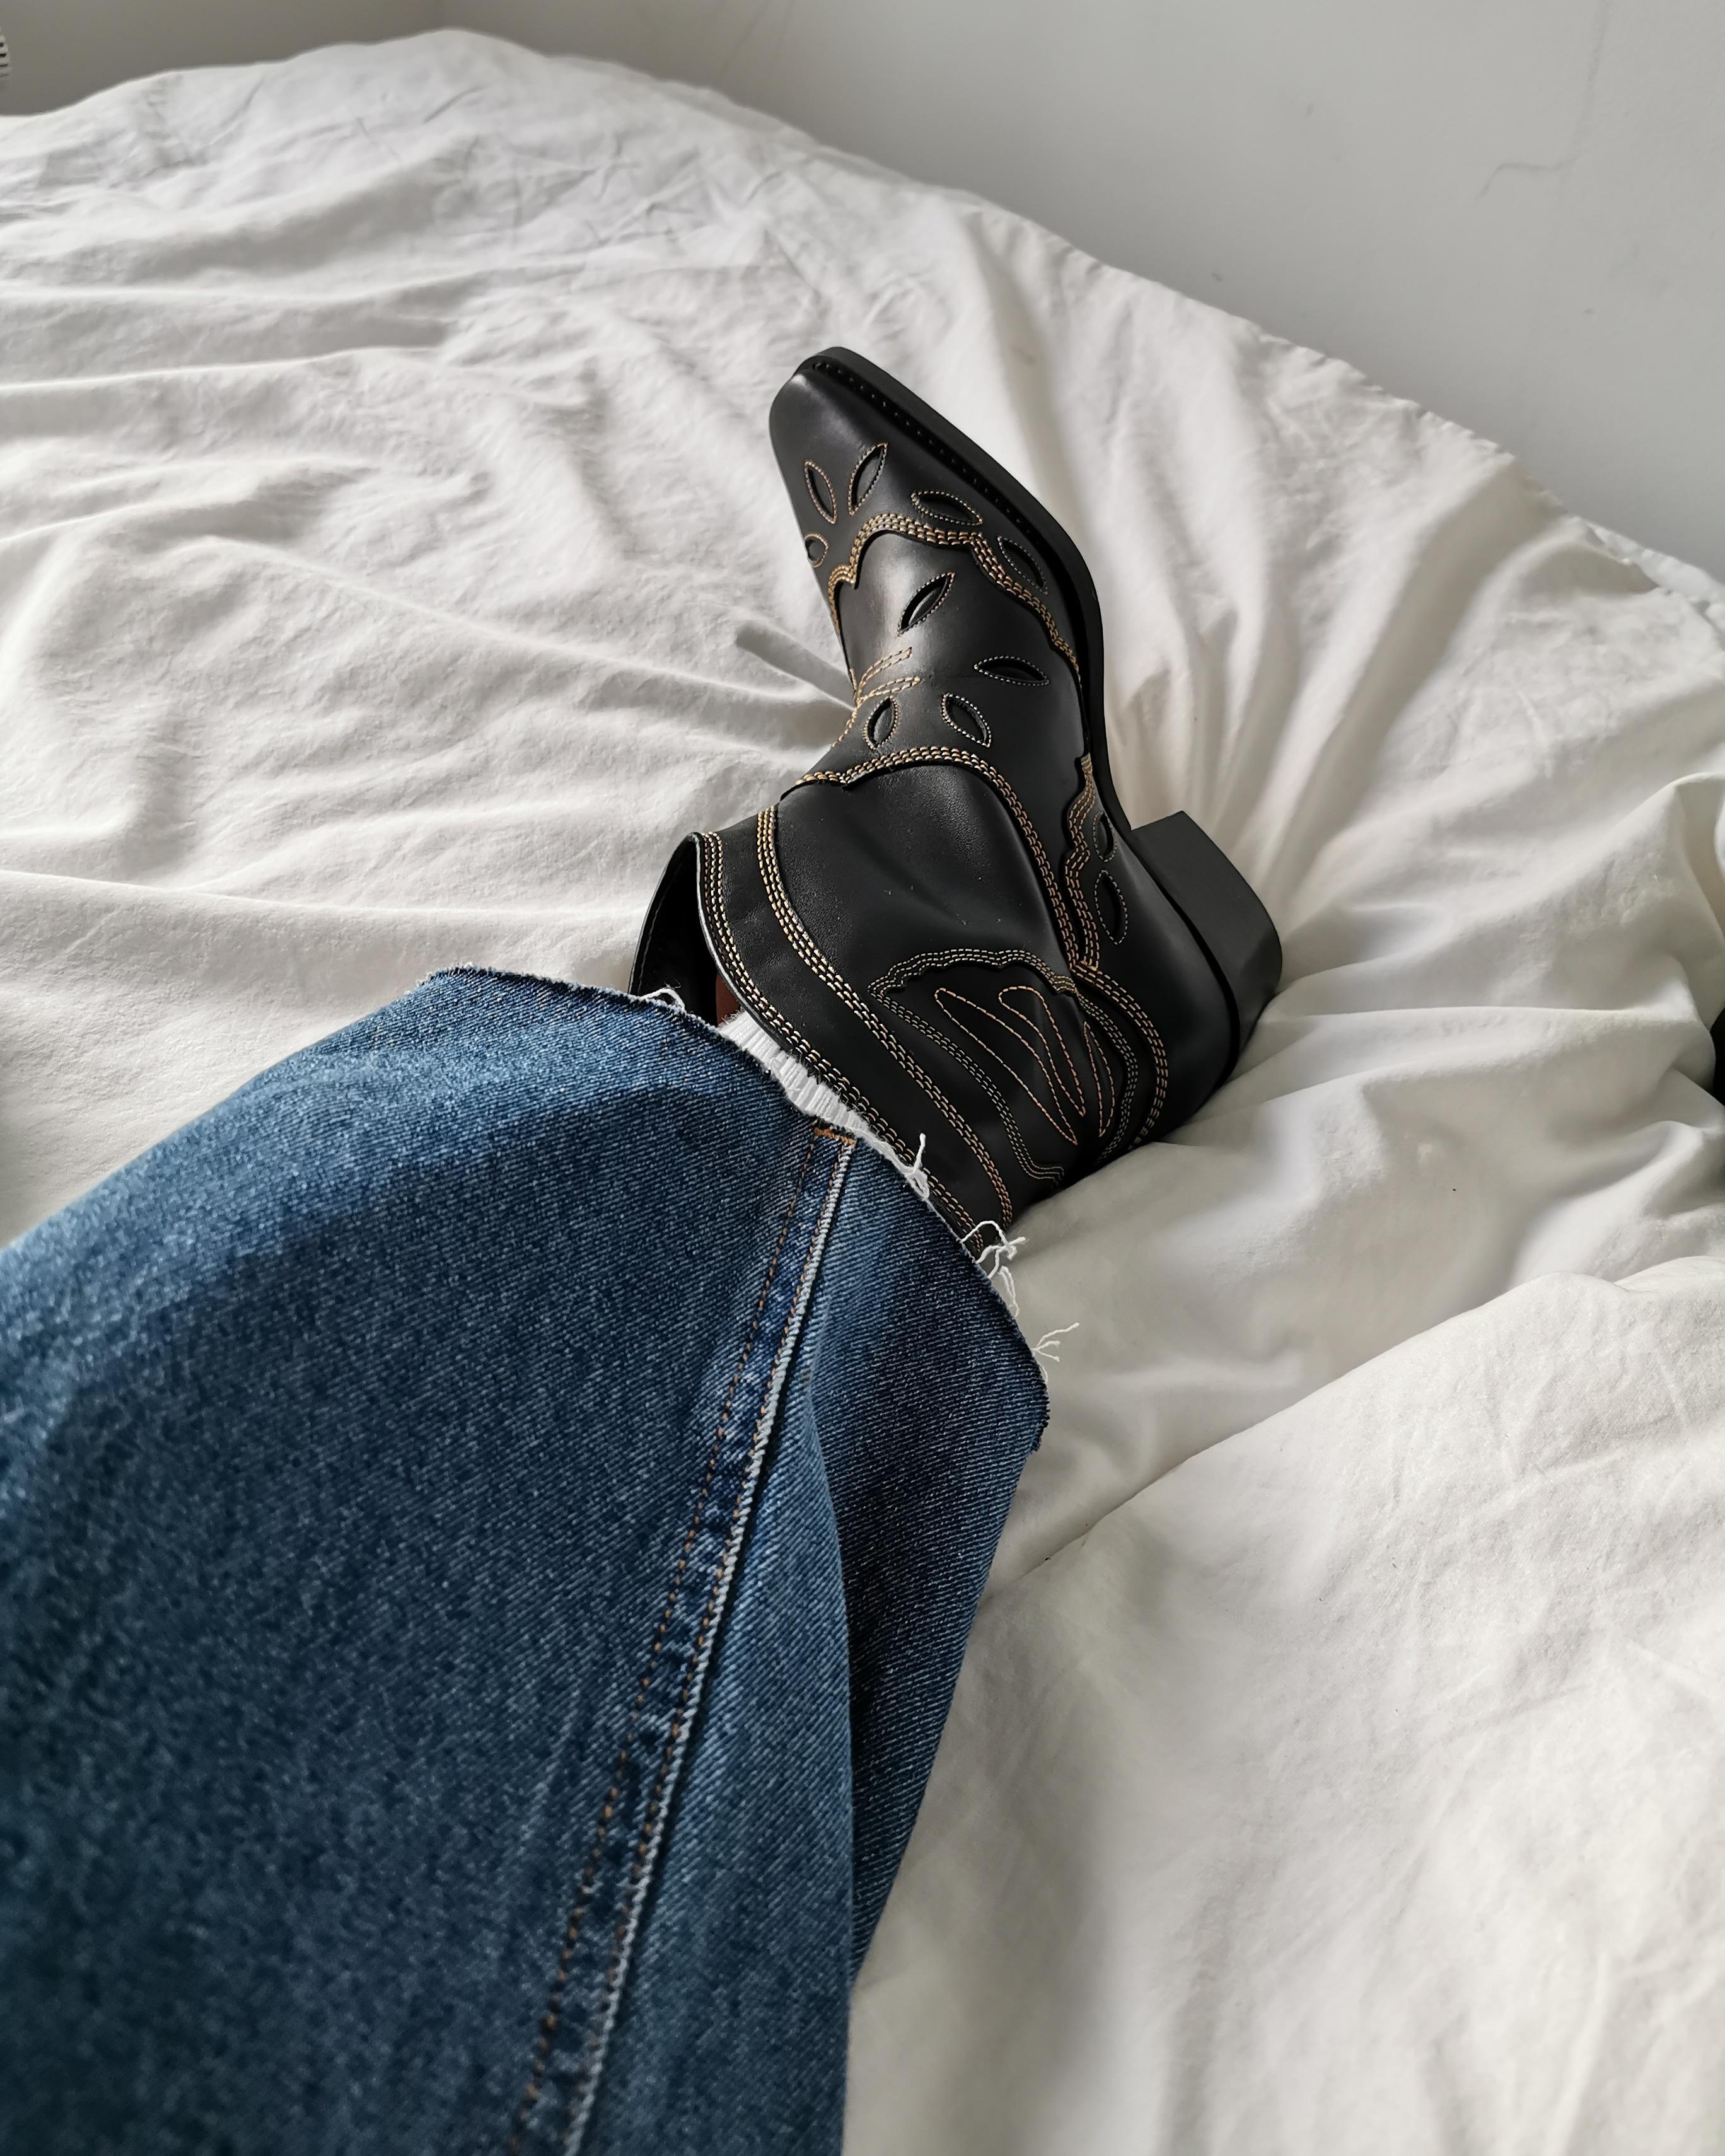  🐎 #cowboyboots #boots #ganni 